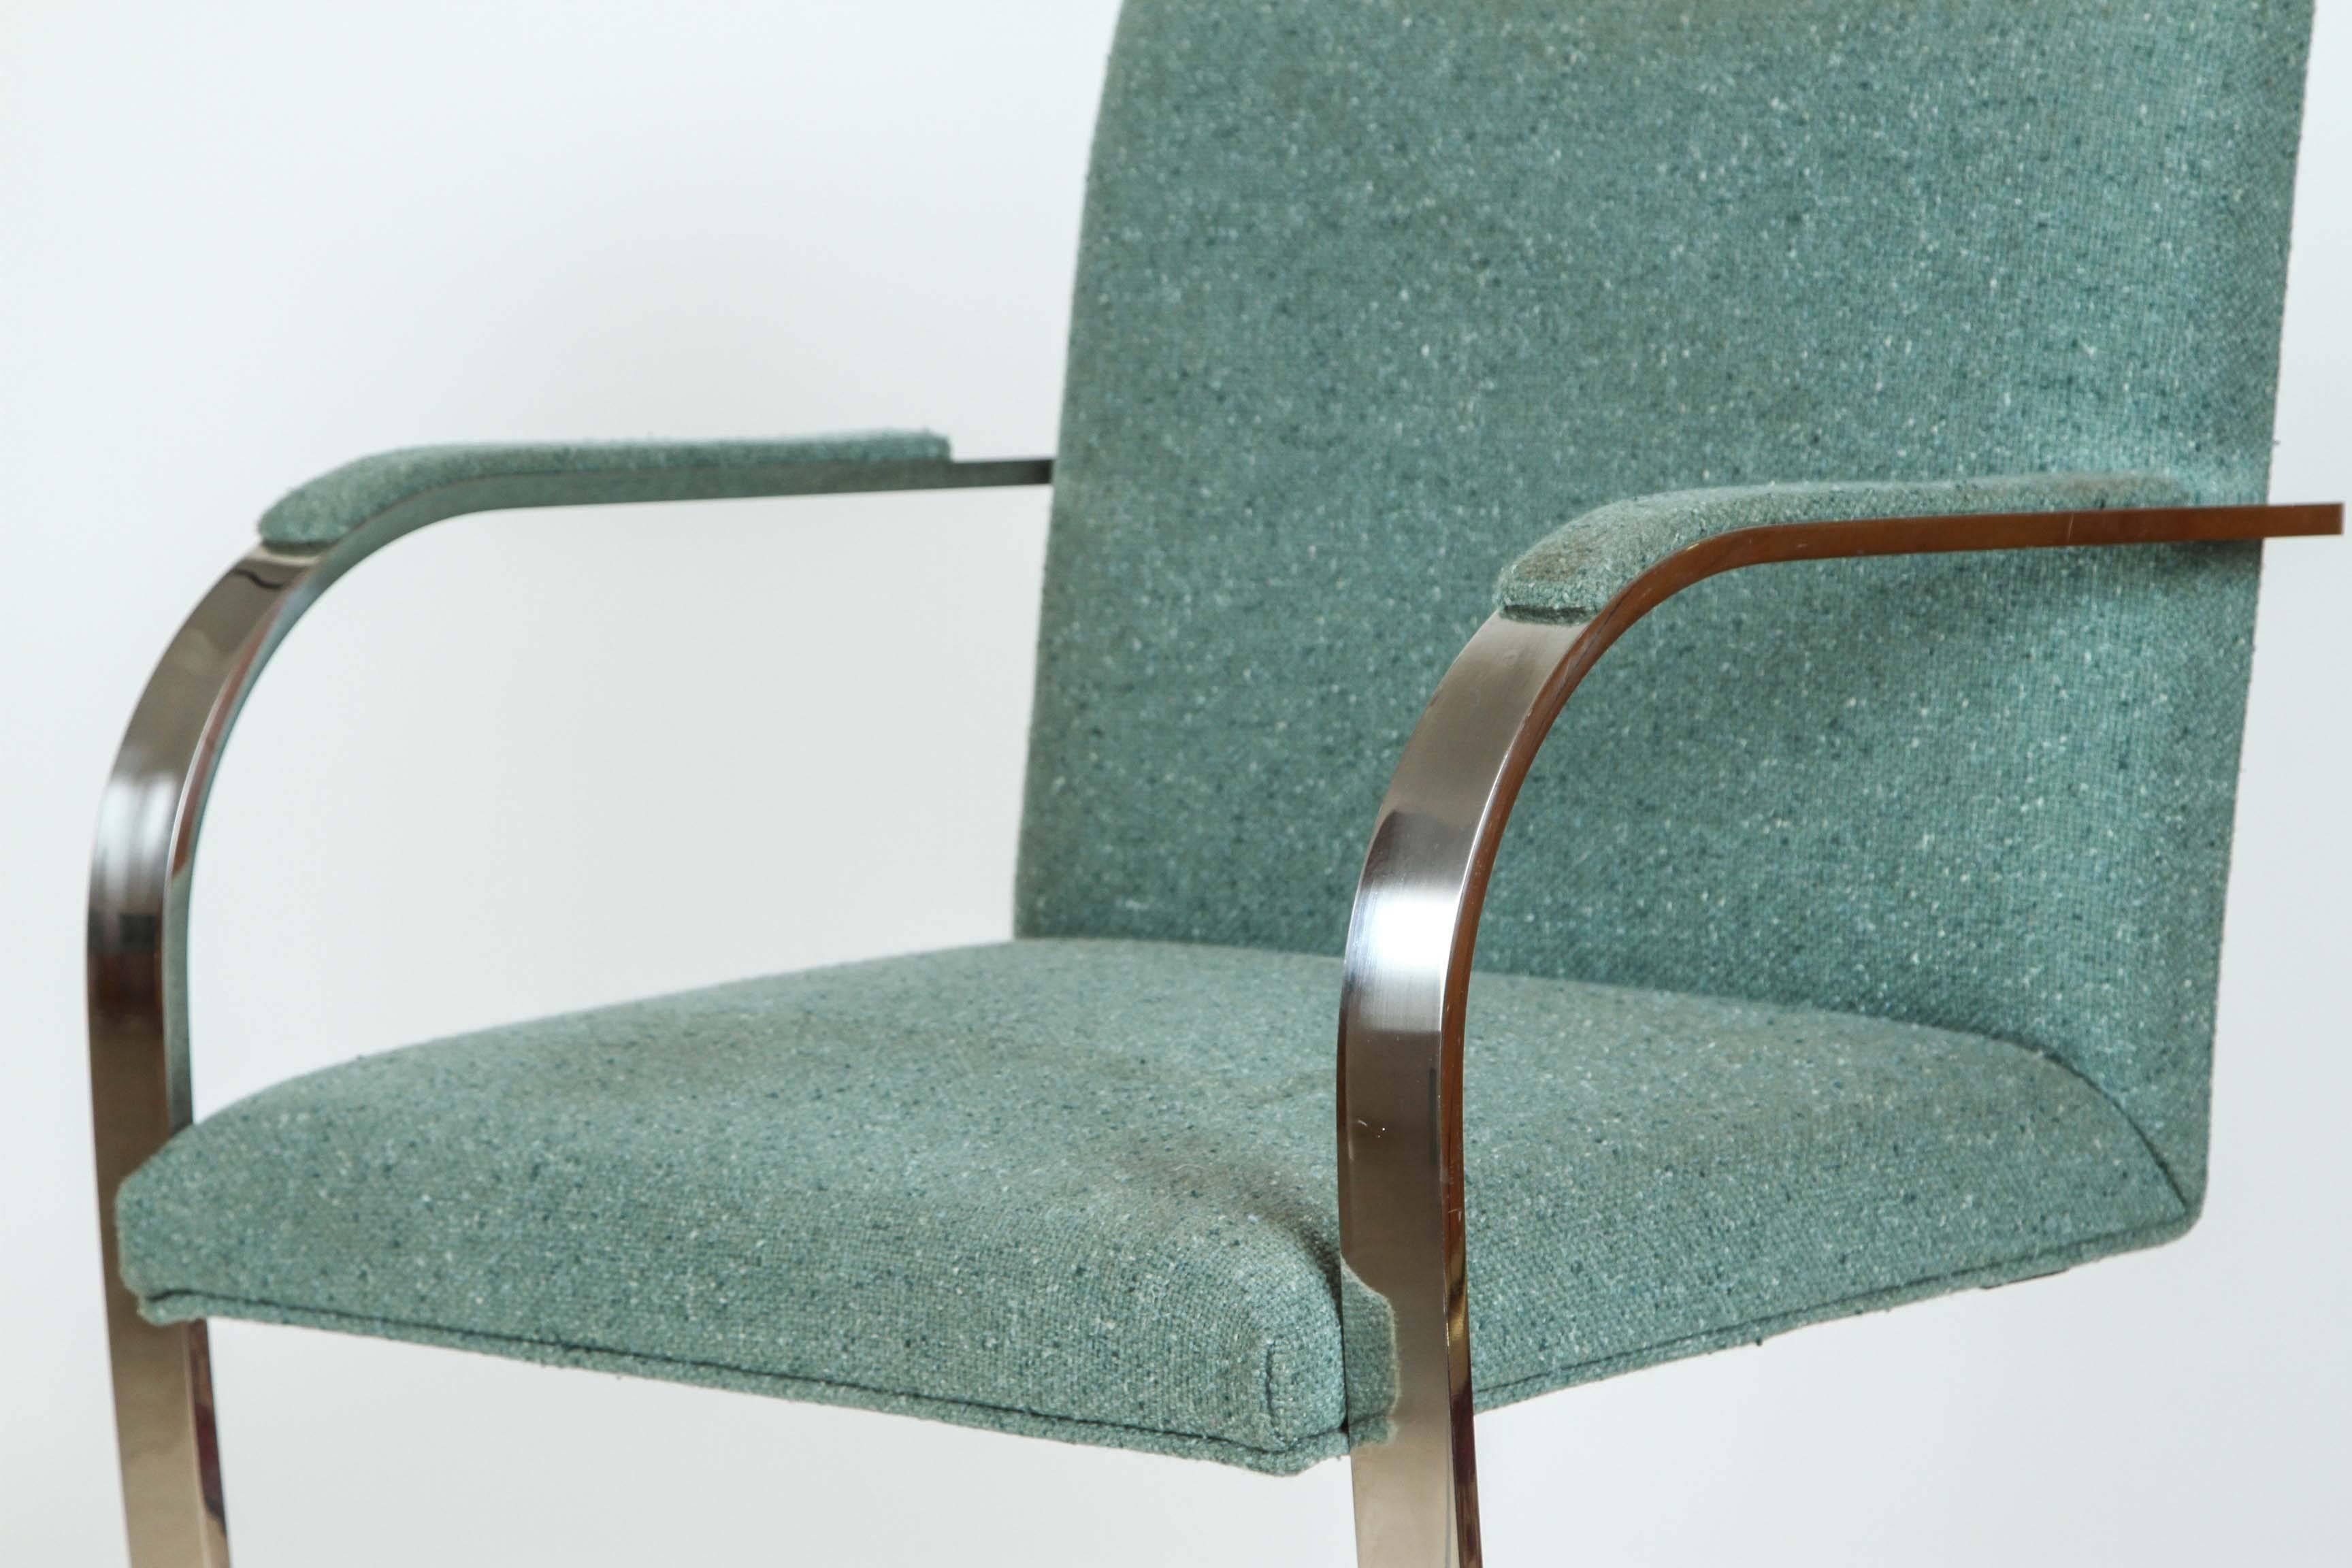 Paire de chaises de bar plates de style Ludwig Mies Van Der Rohe.
Les cadres plats en acier inoxydable poli sont tapissés d'un tweed de laine Harris de couleur bleutée sur des sièges et des dossiers rembourrés avec un accoudoir rembourré pour plus